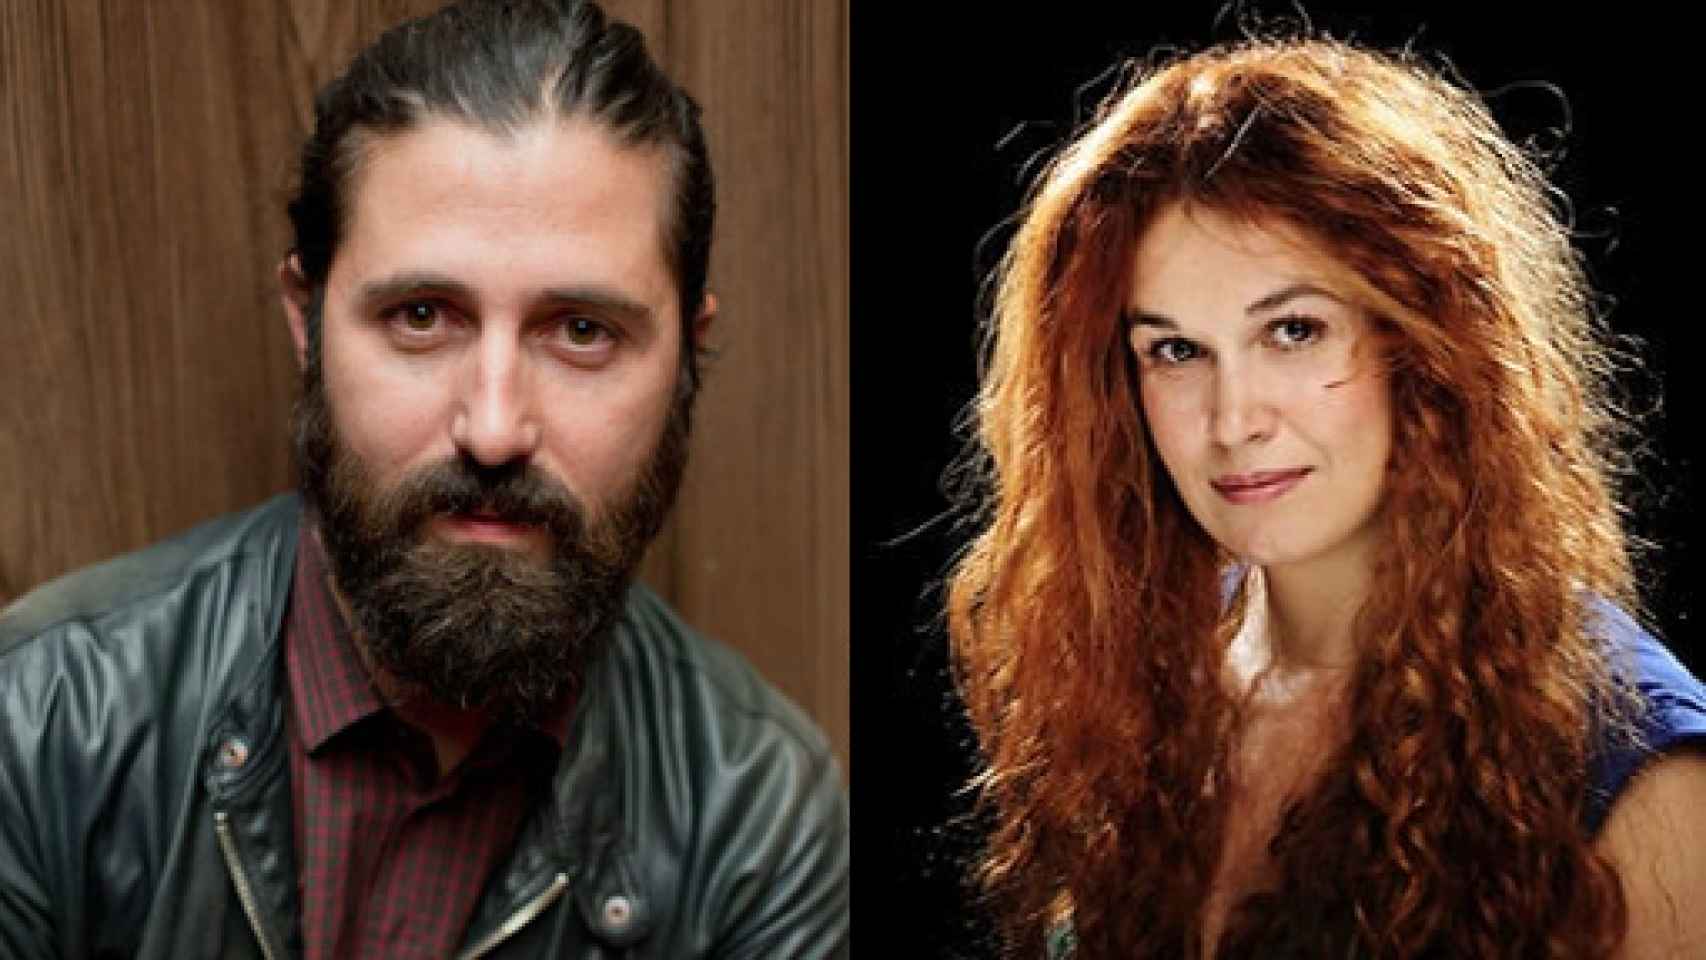 Image: Darío Facal y Carlota Ferrer, nuevos coordinadores artísticos del Corral de Comedias de Alcalá